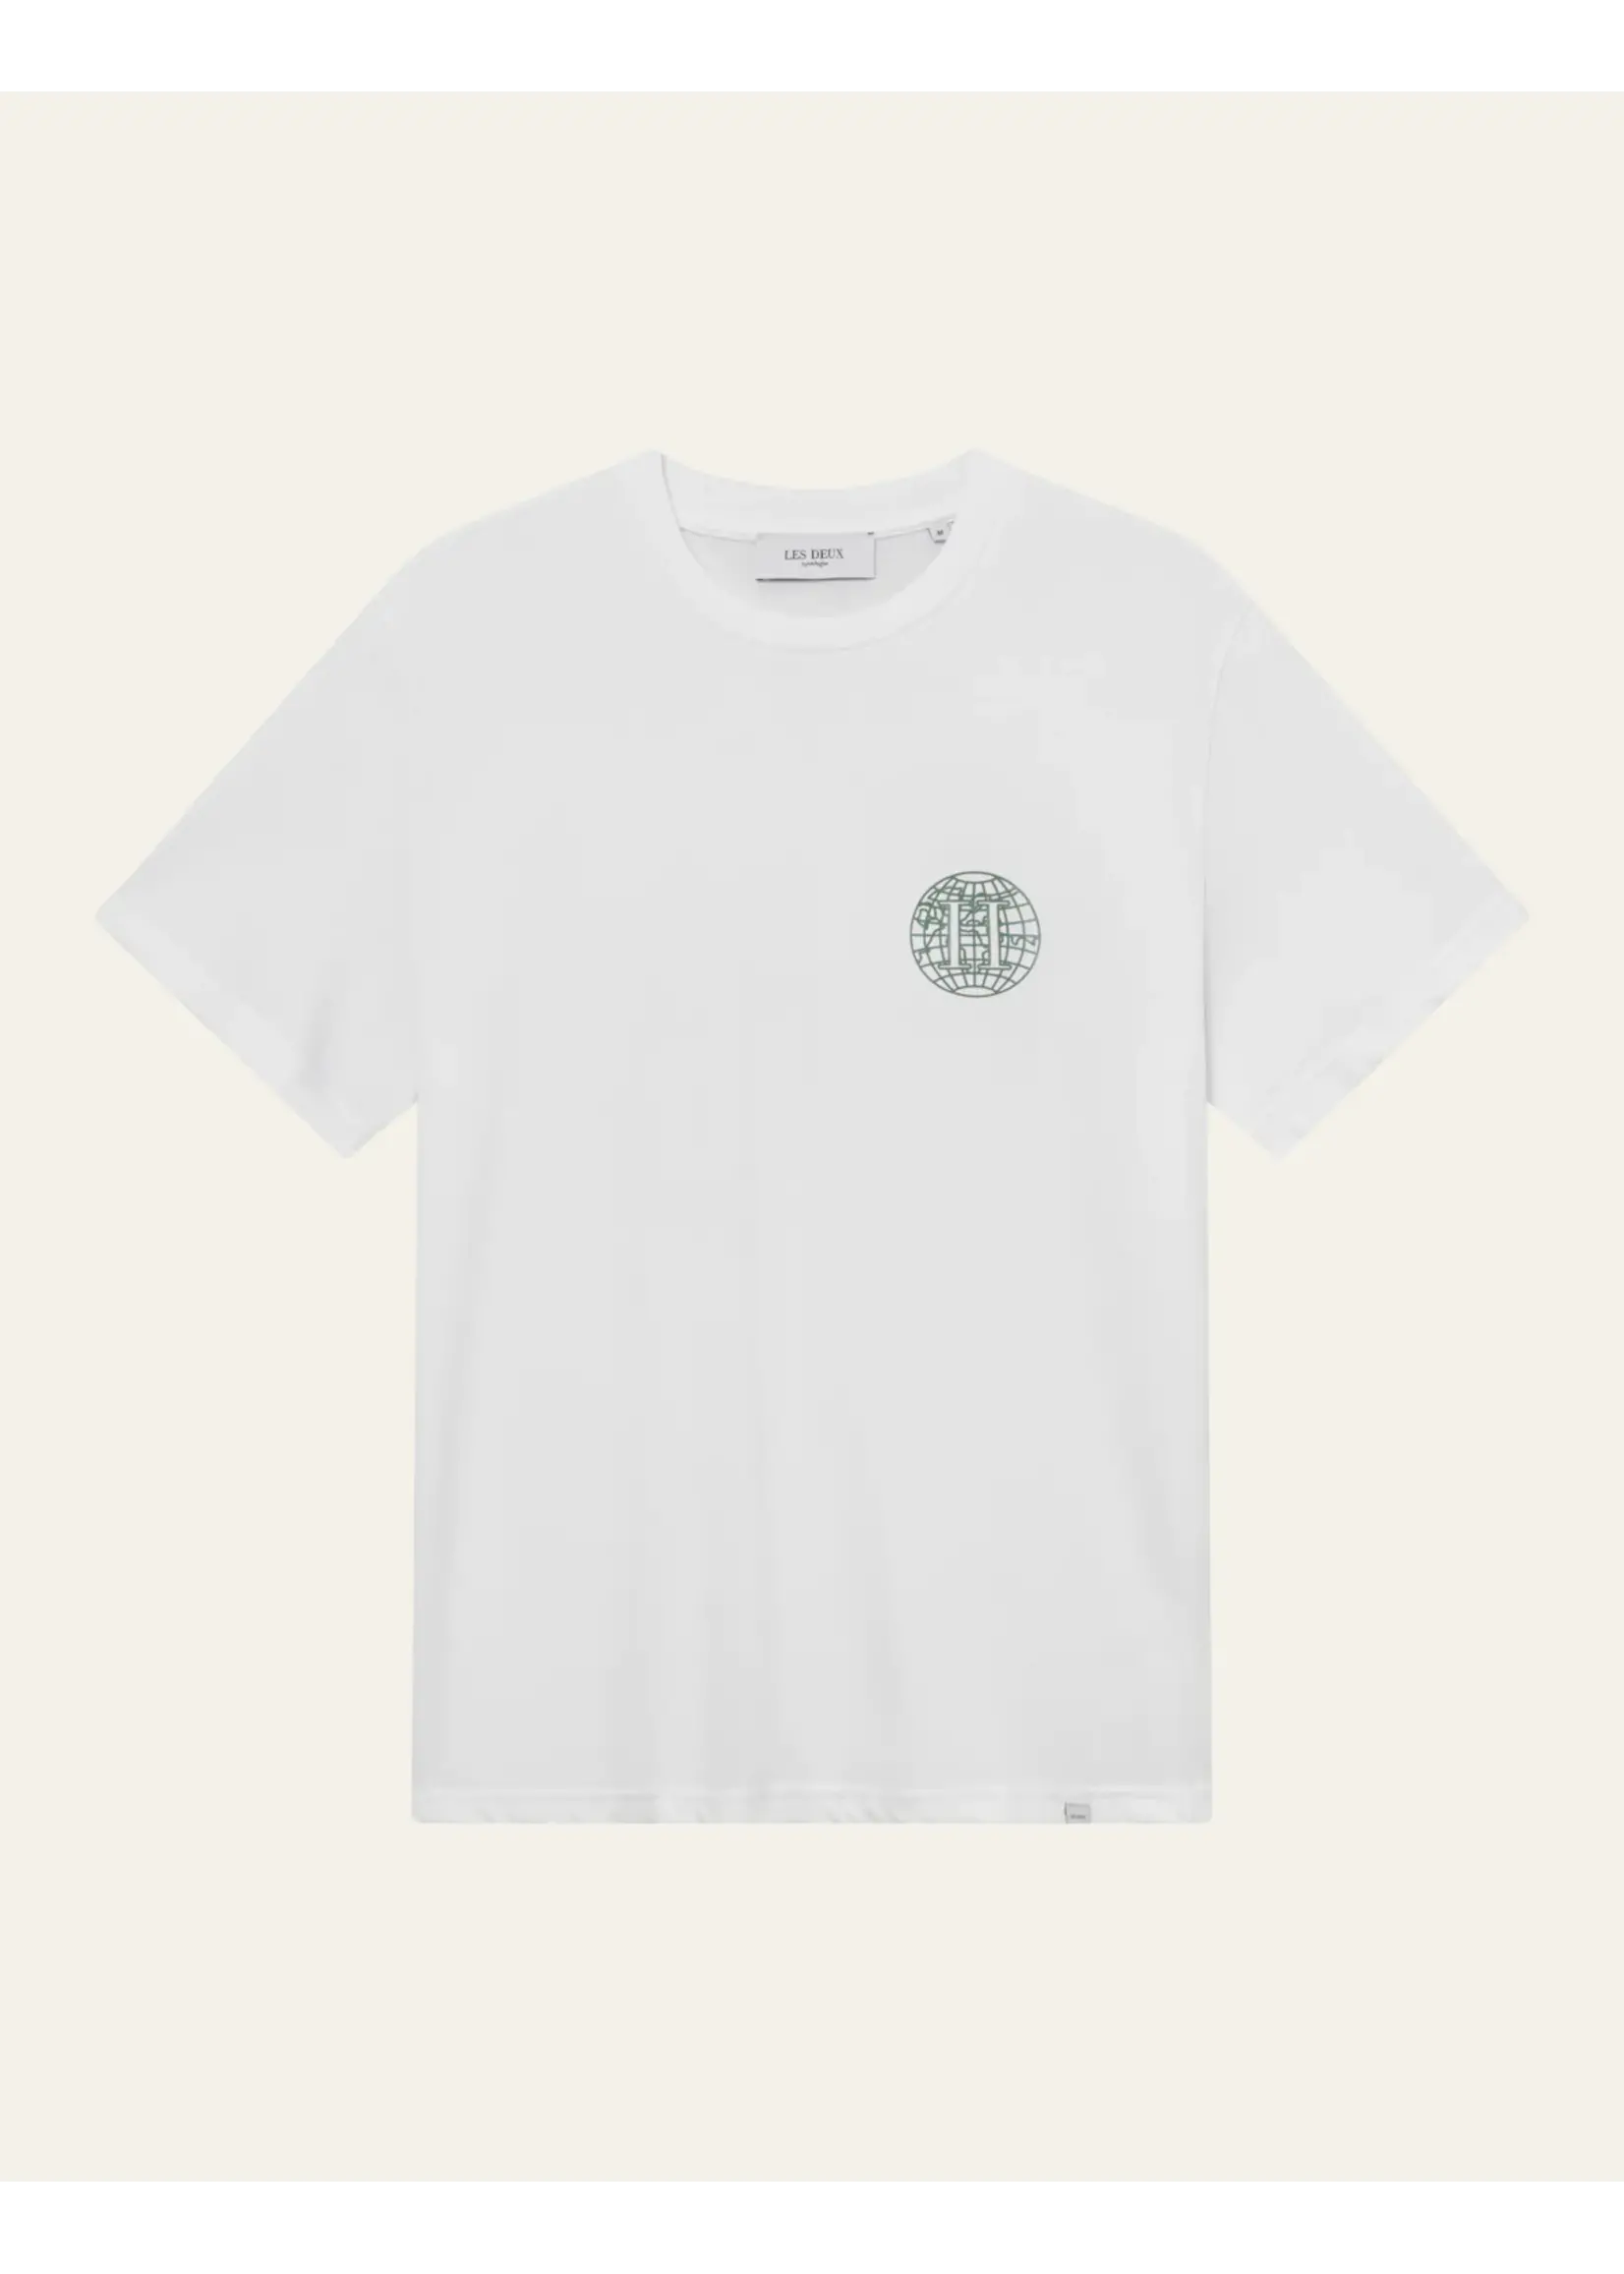 Les Deux Les Deux - Globe T-Shirt - Verschillende kleuren verkrijgbaar